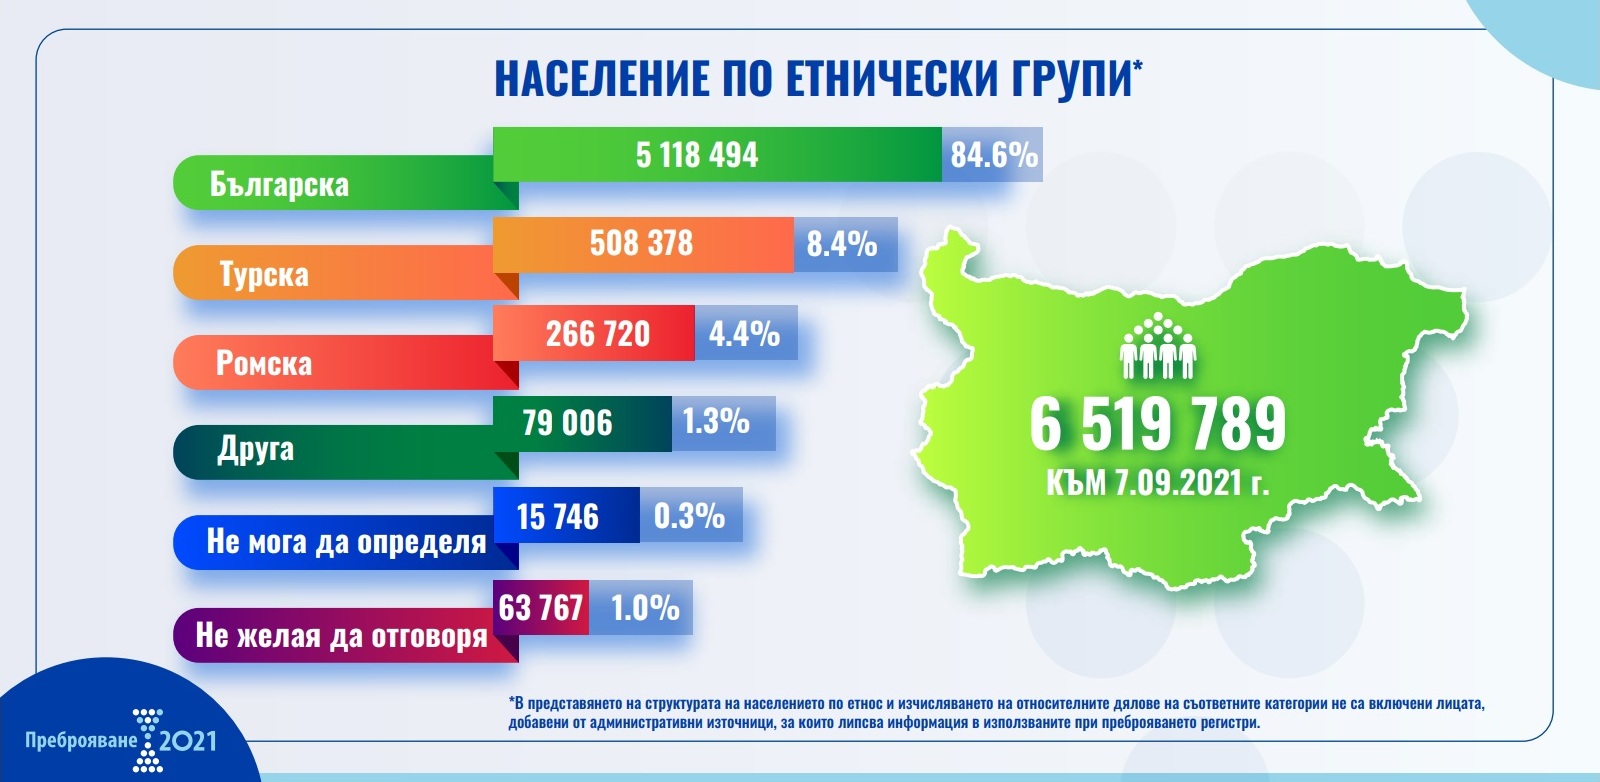 Bulgaristan’da nüfus sayımında 508 bin 378 kişi kendini Türk olarak tanımladı